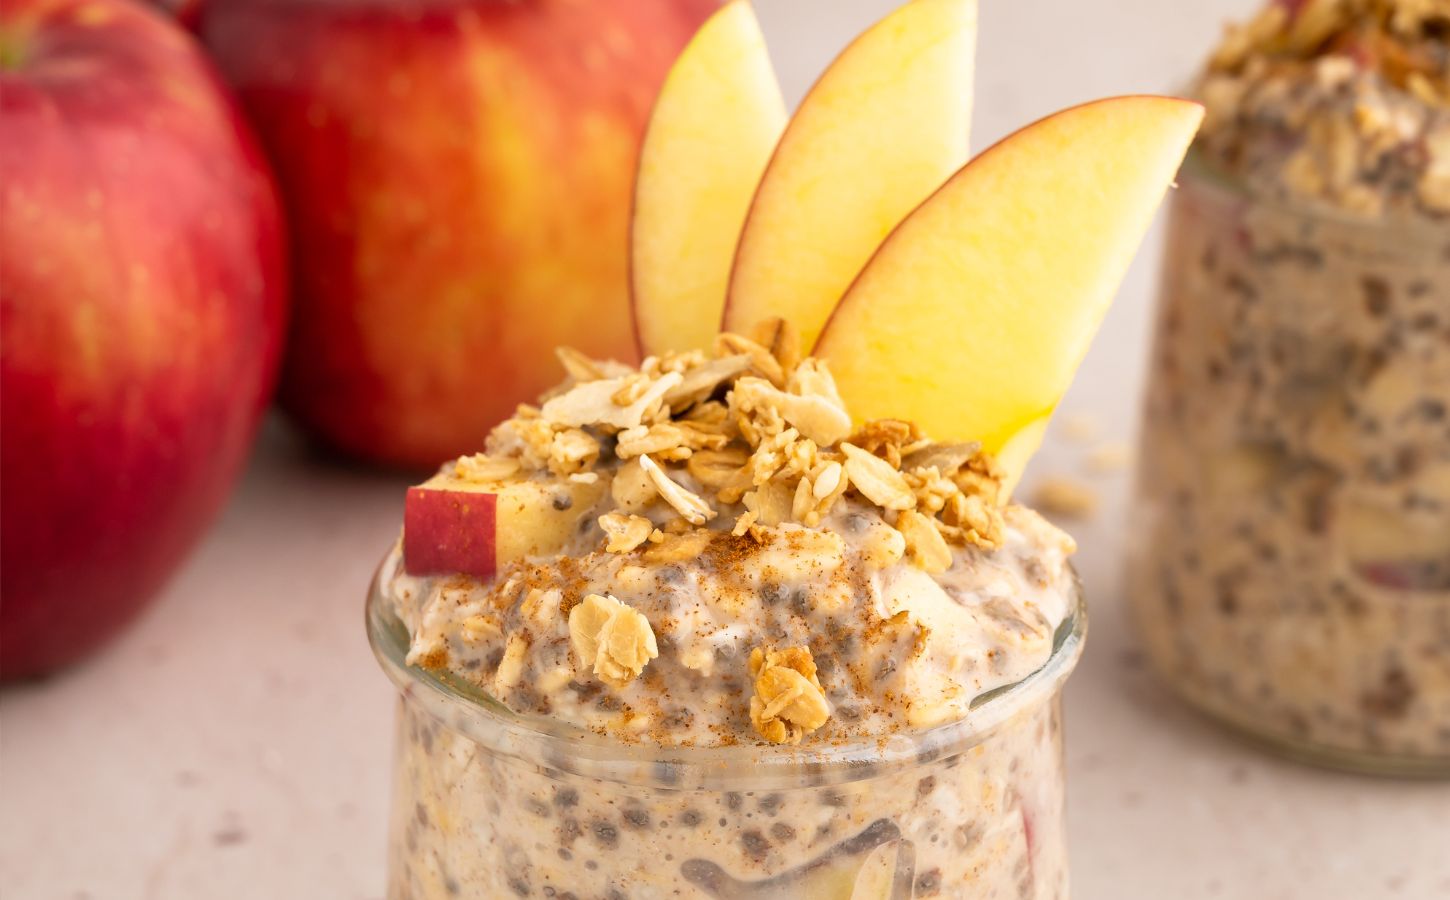 Apple pie overnight oats, a healthy vegan breakfast idea